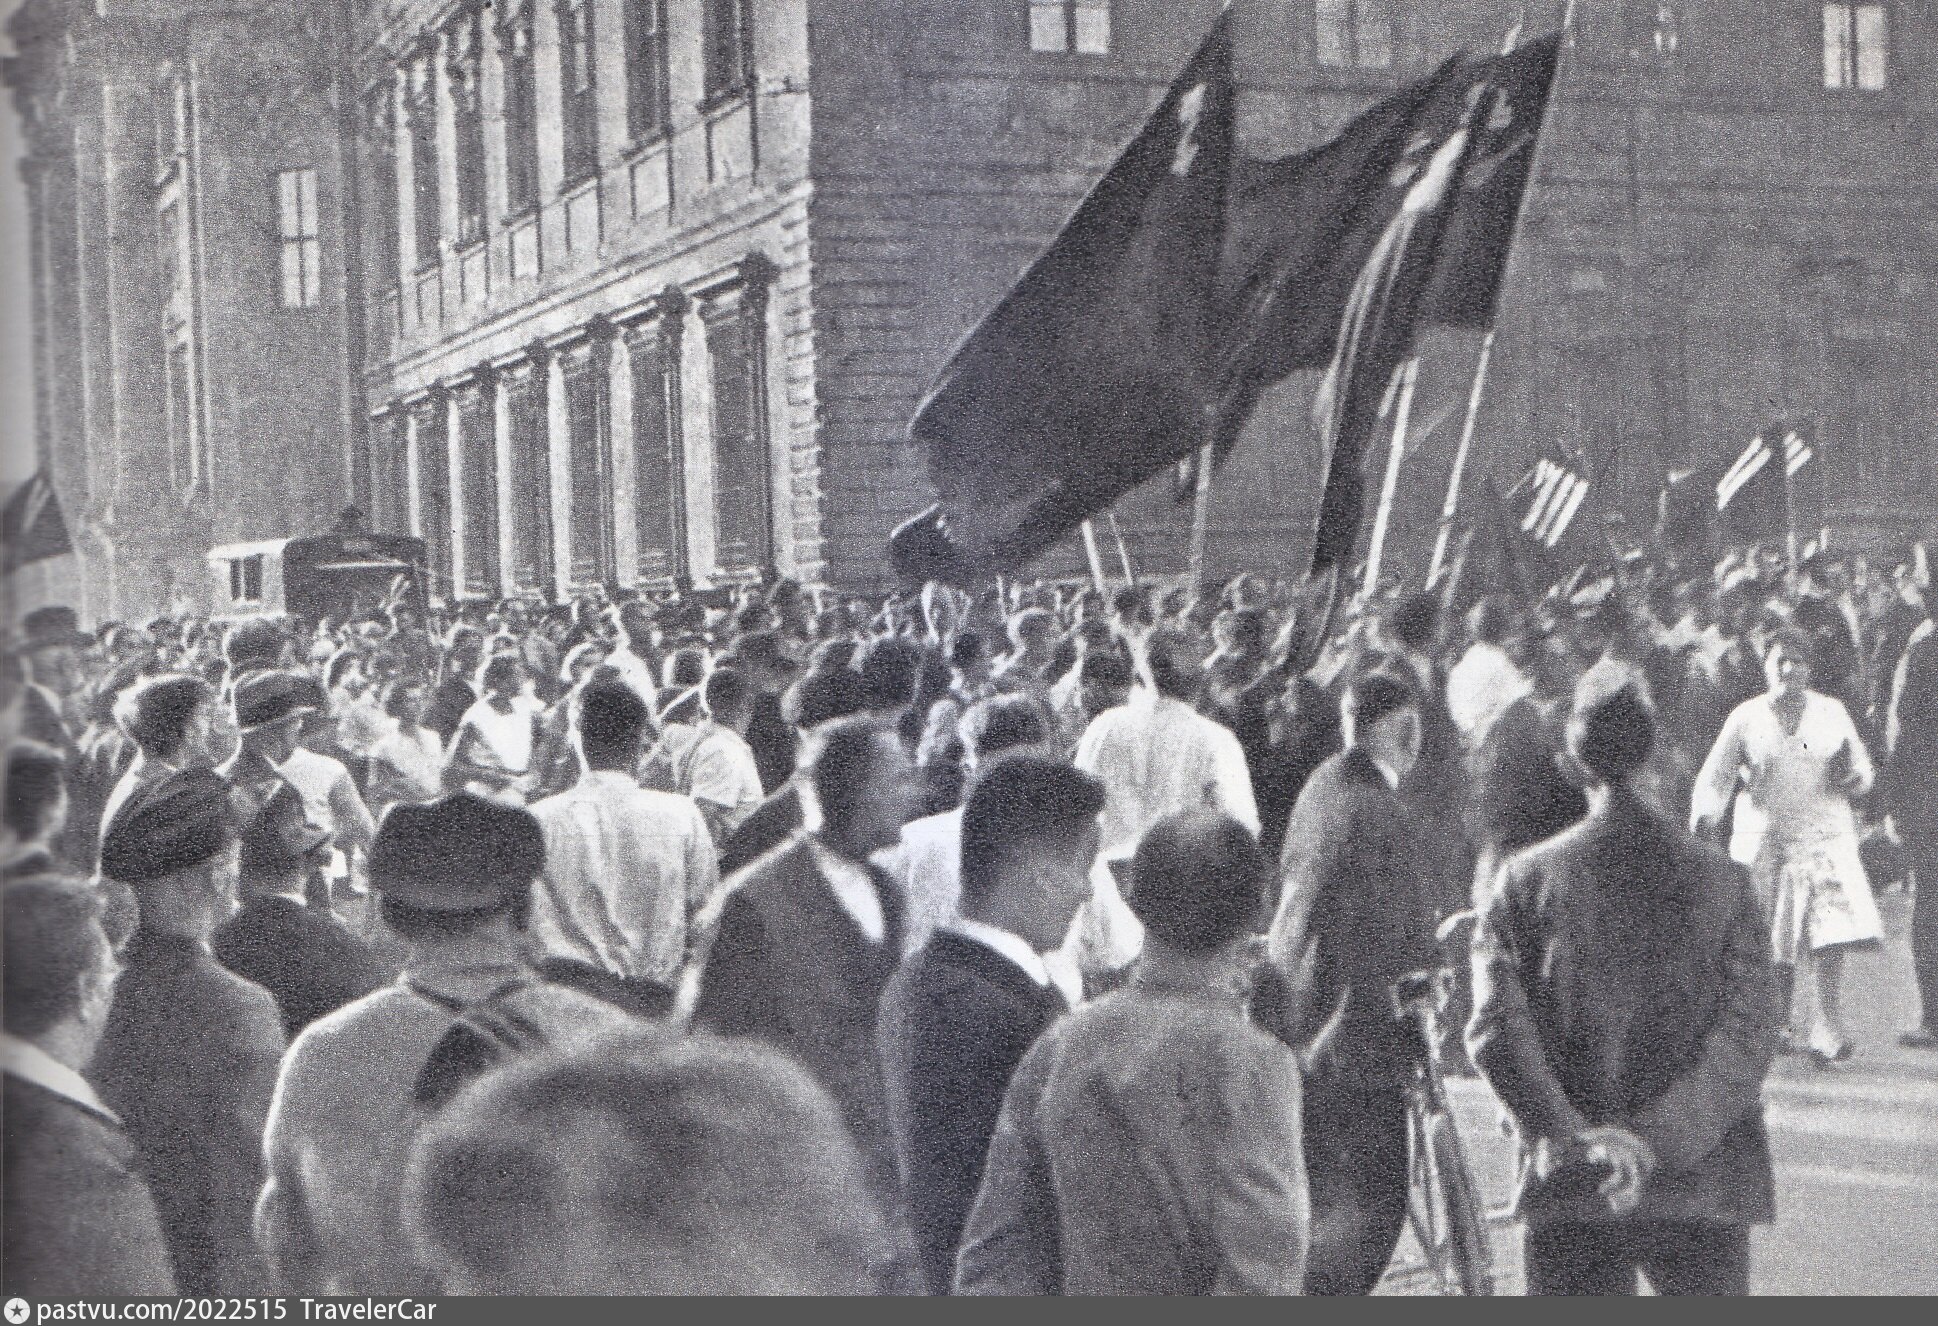 Митинг в Германии 1932. Антифашистская демонстрация в Париже 1934. Митинги фашизма в Германии 1933. Германия 1932.